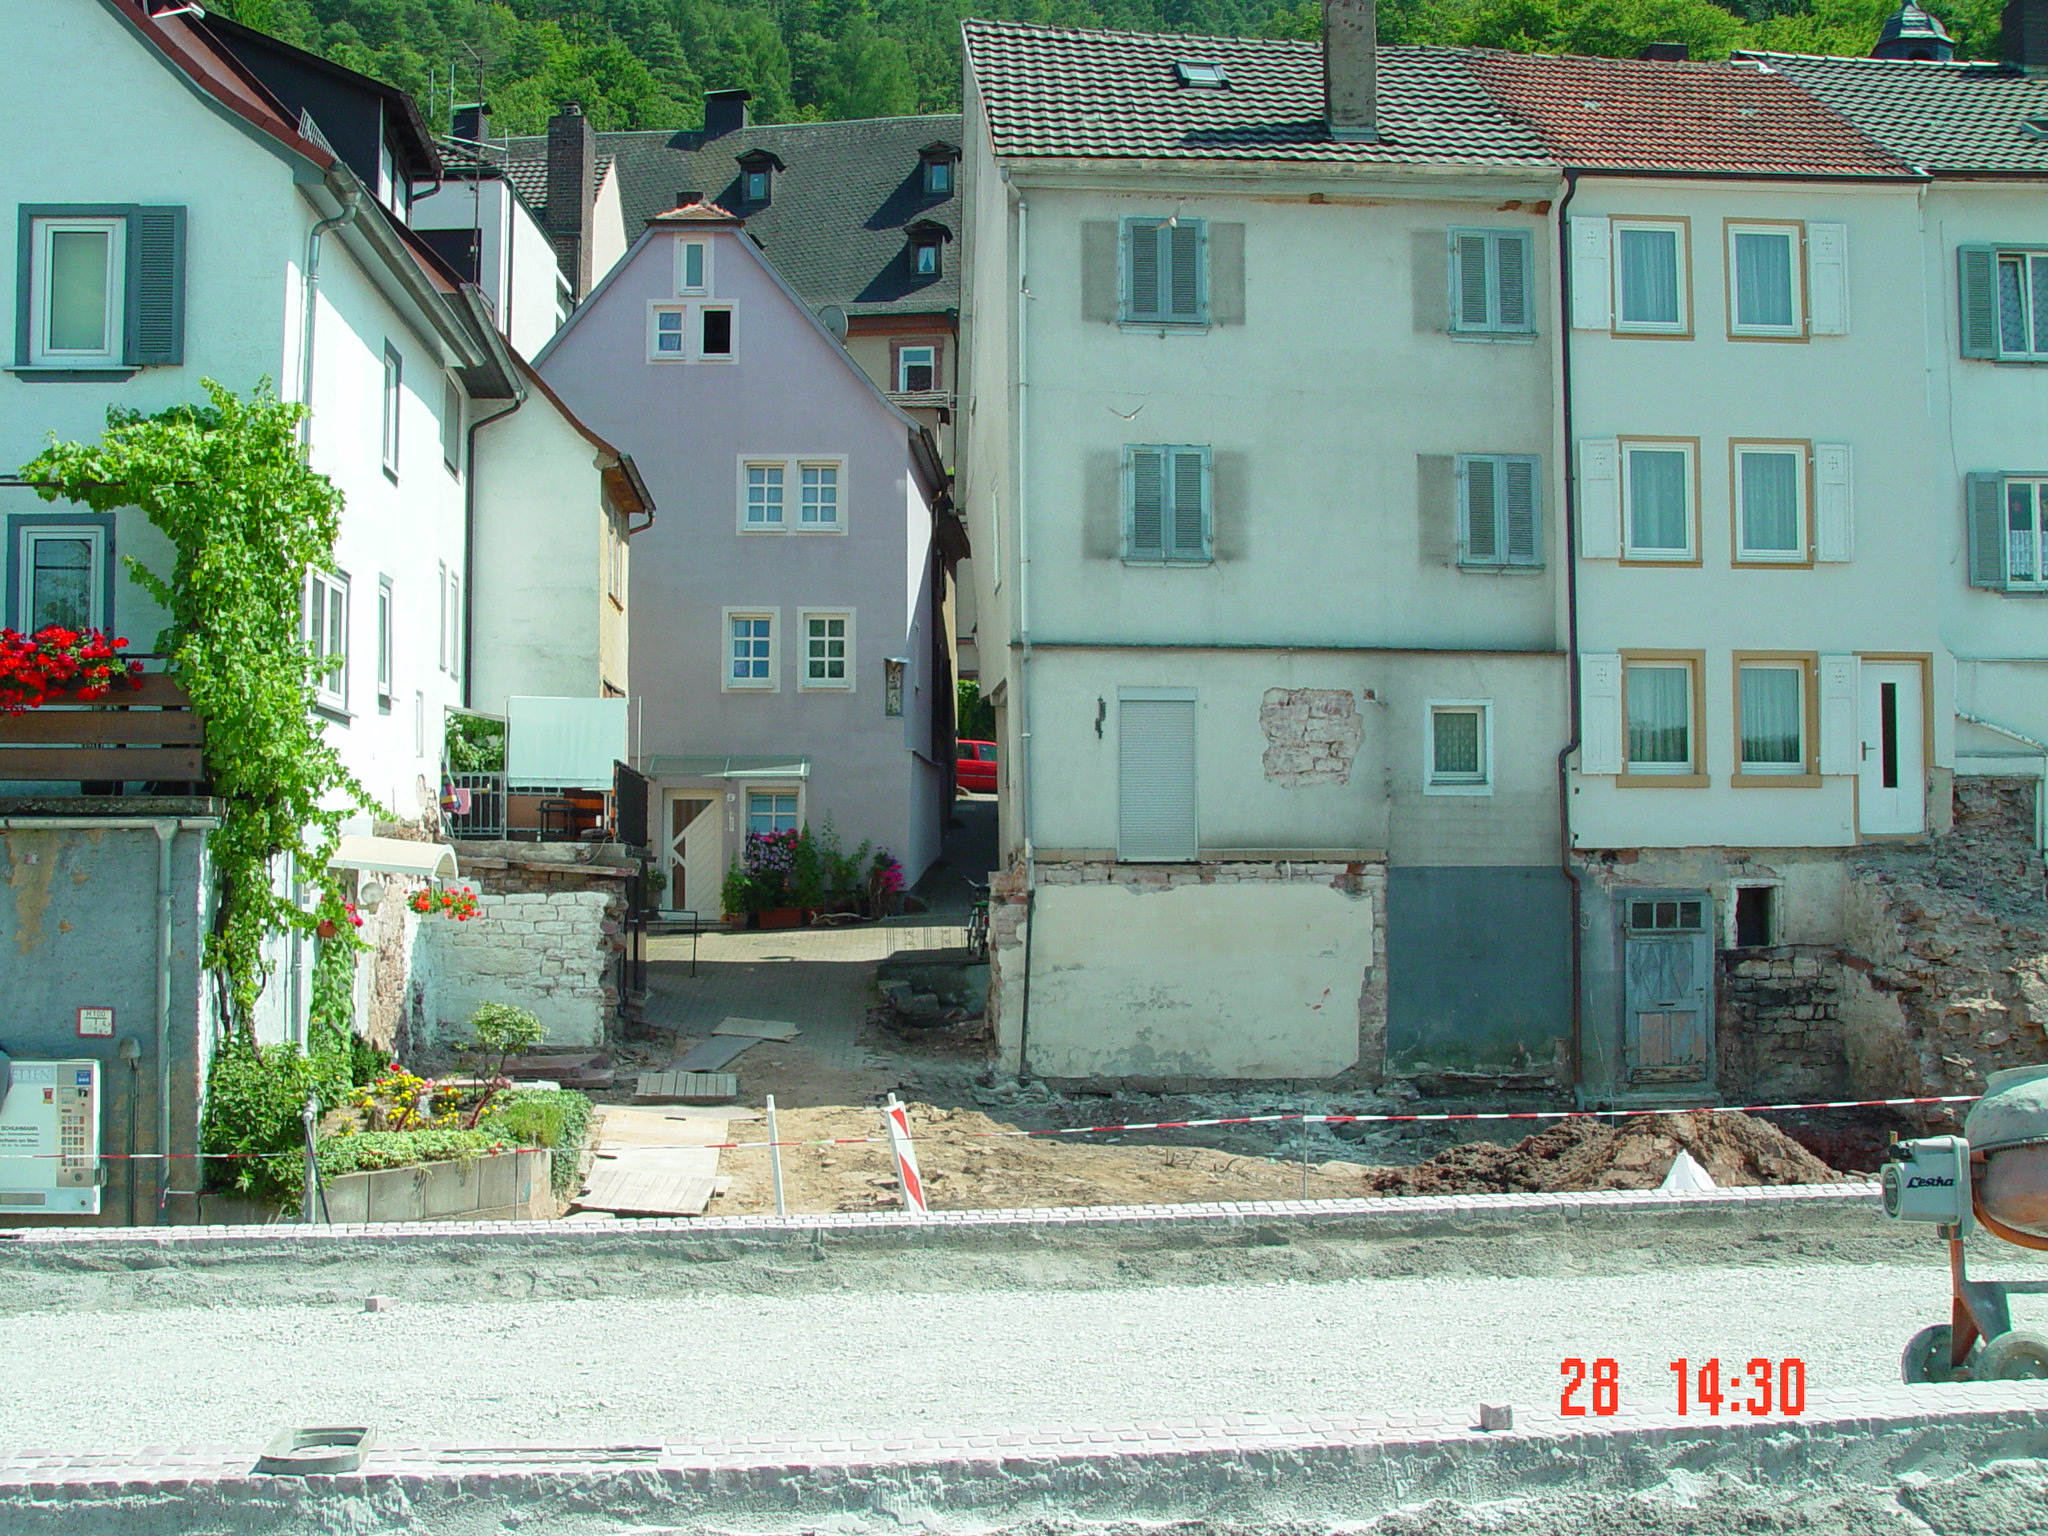  Mainstraße Juli 05 Aufnahme von Franz Hofmann 